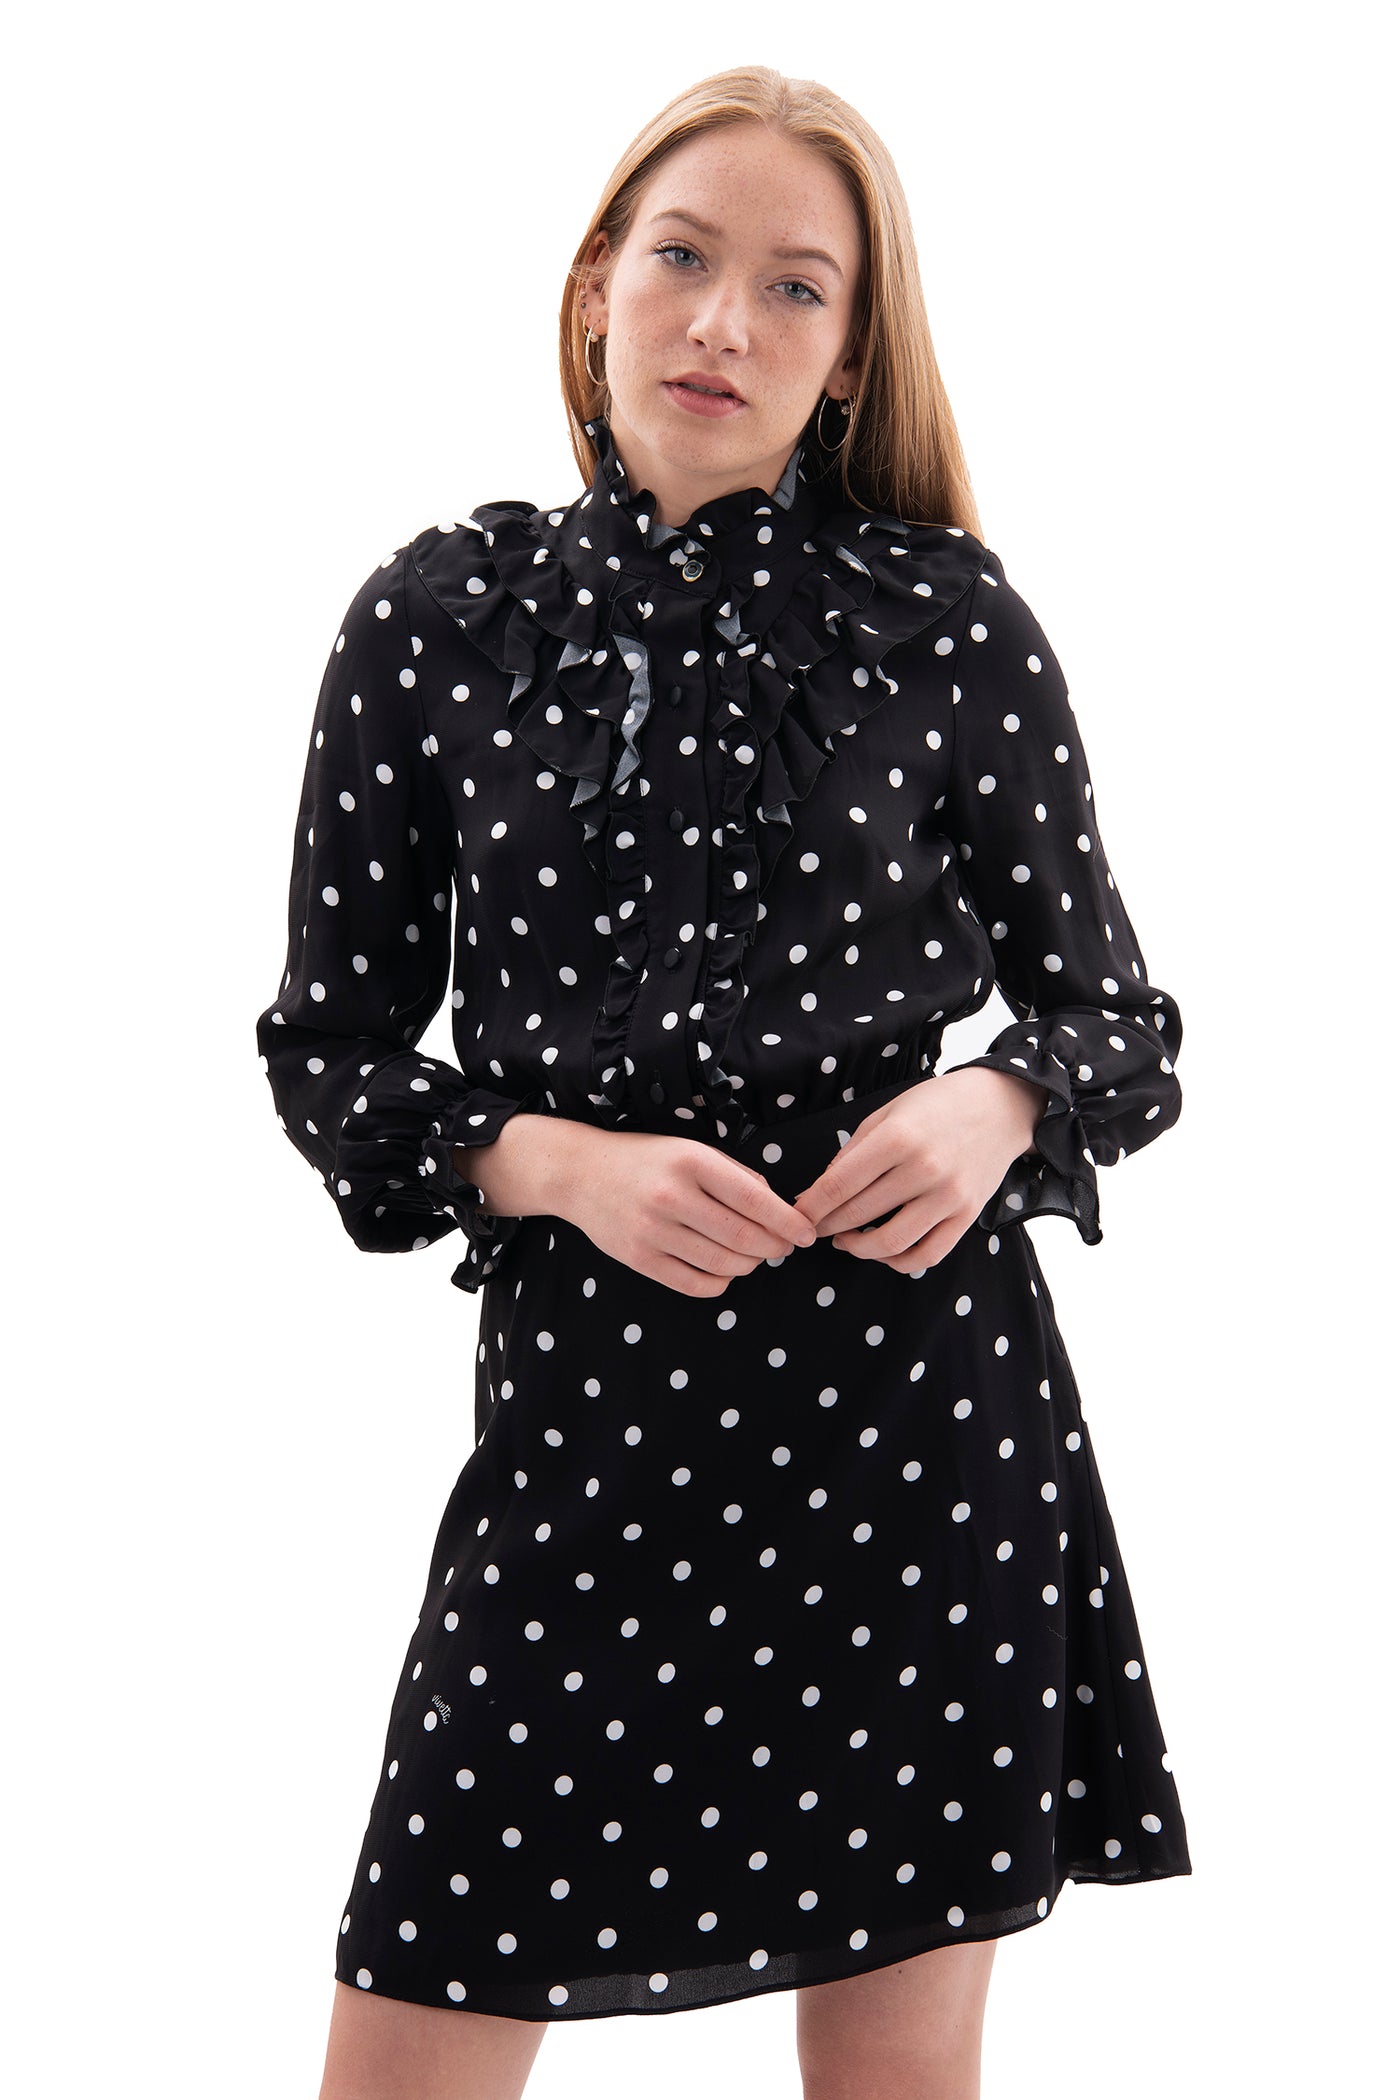 Vivetta black and white polka dot dress